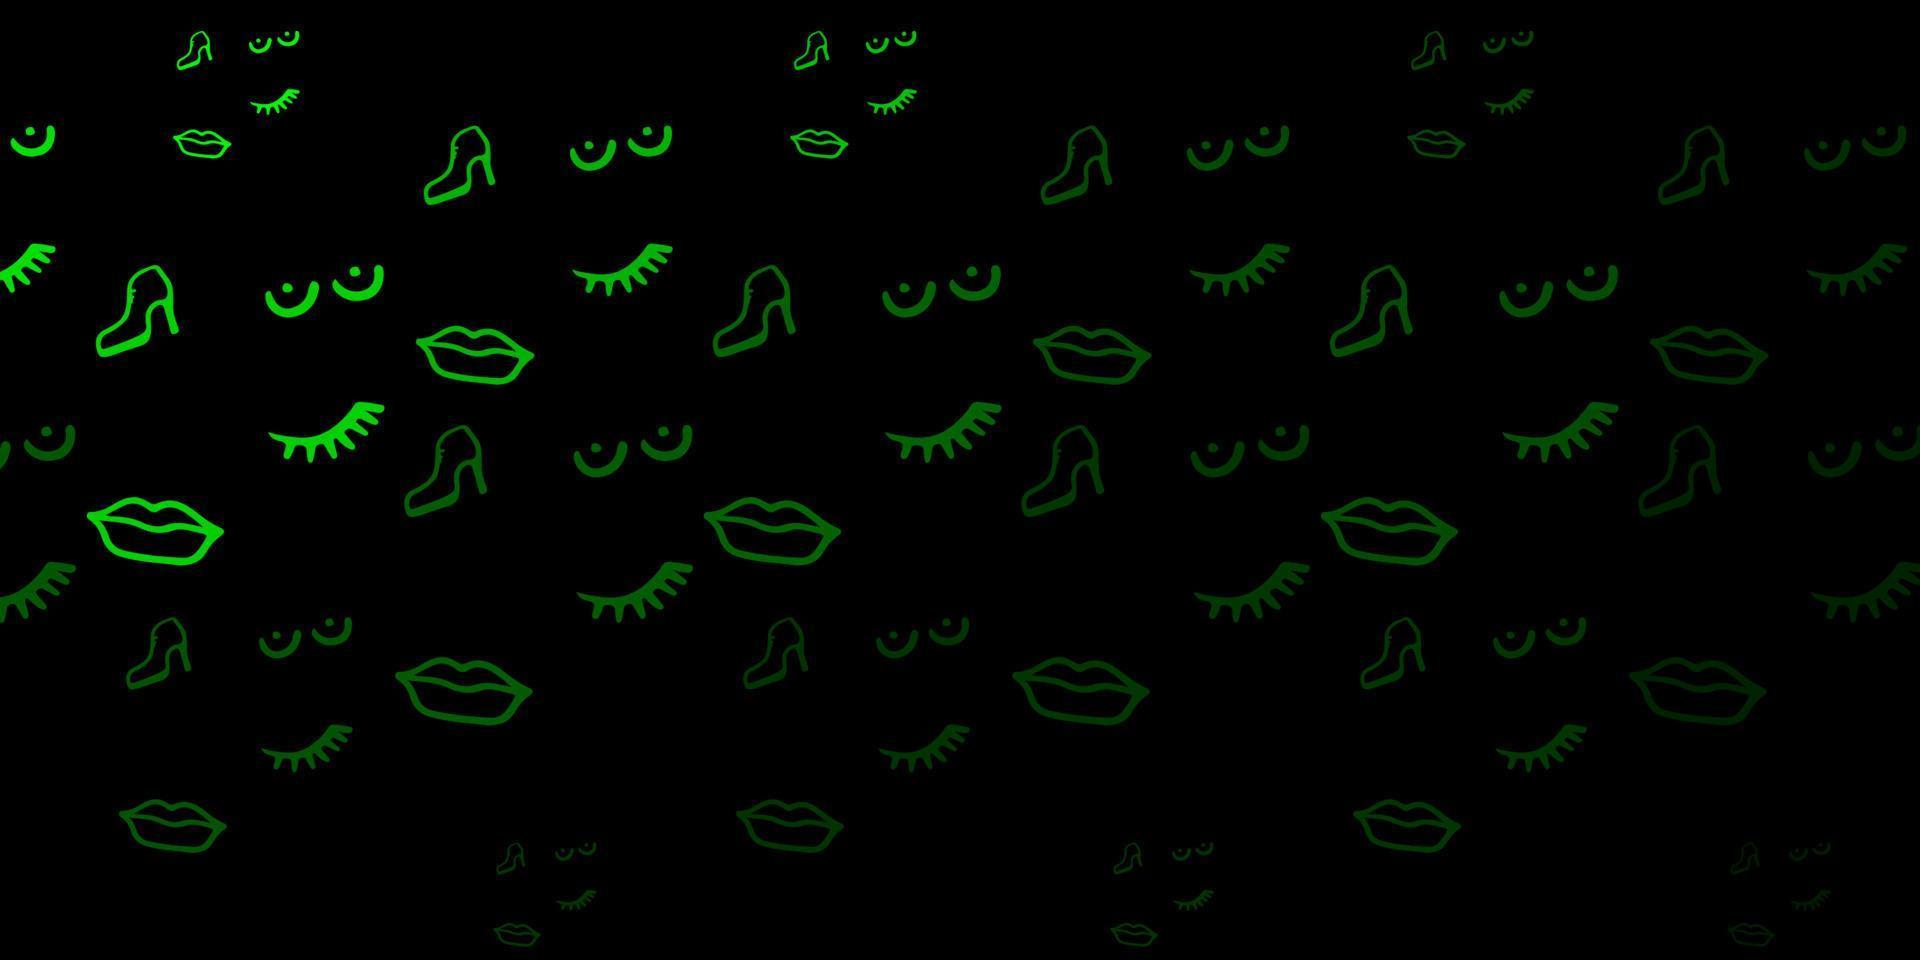 trama vettoriale verde scuro con simboli dei diritti delle donne.